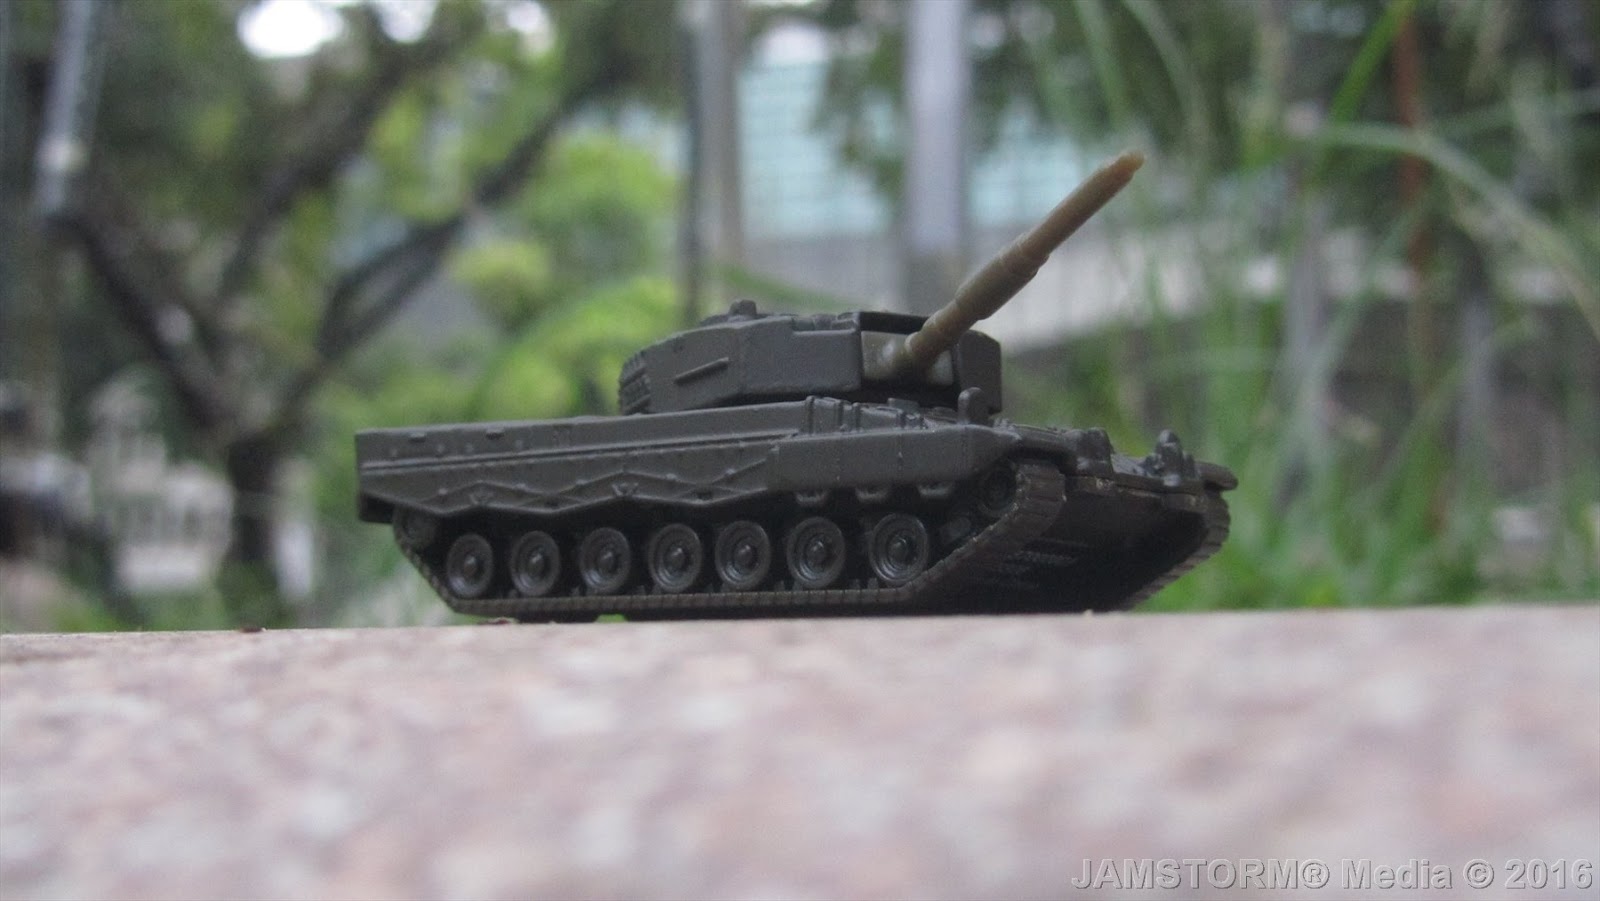 Siku Tank NEW toy model vehicle # 0870 small size